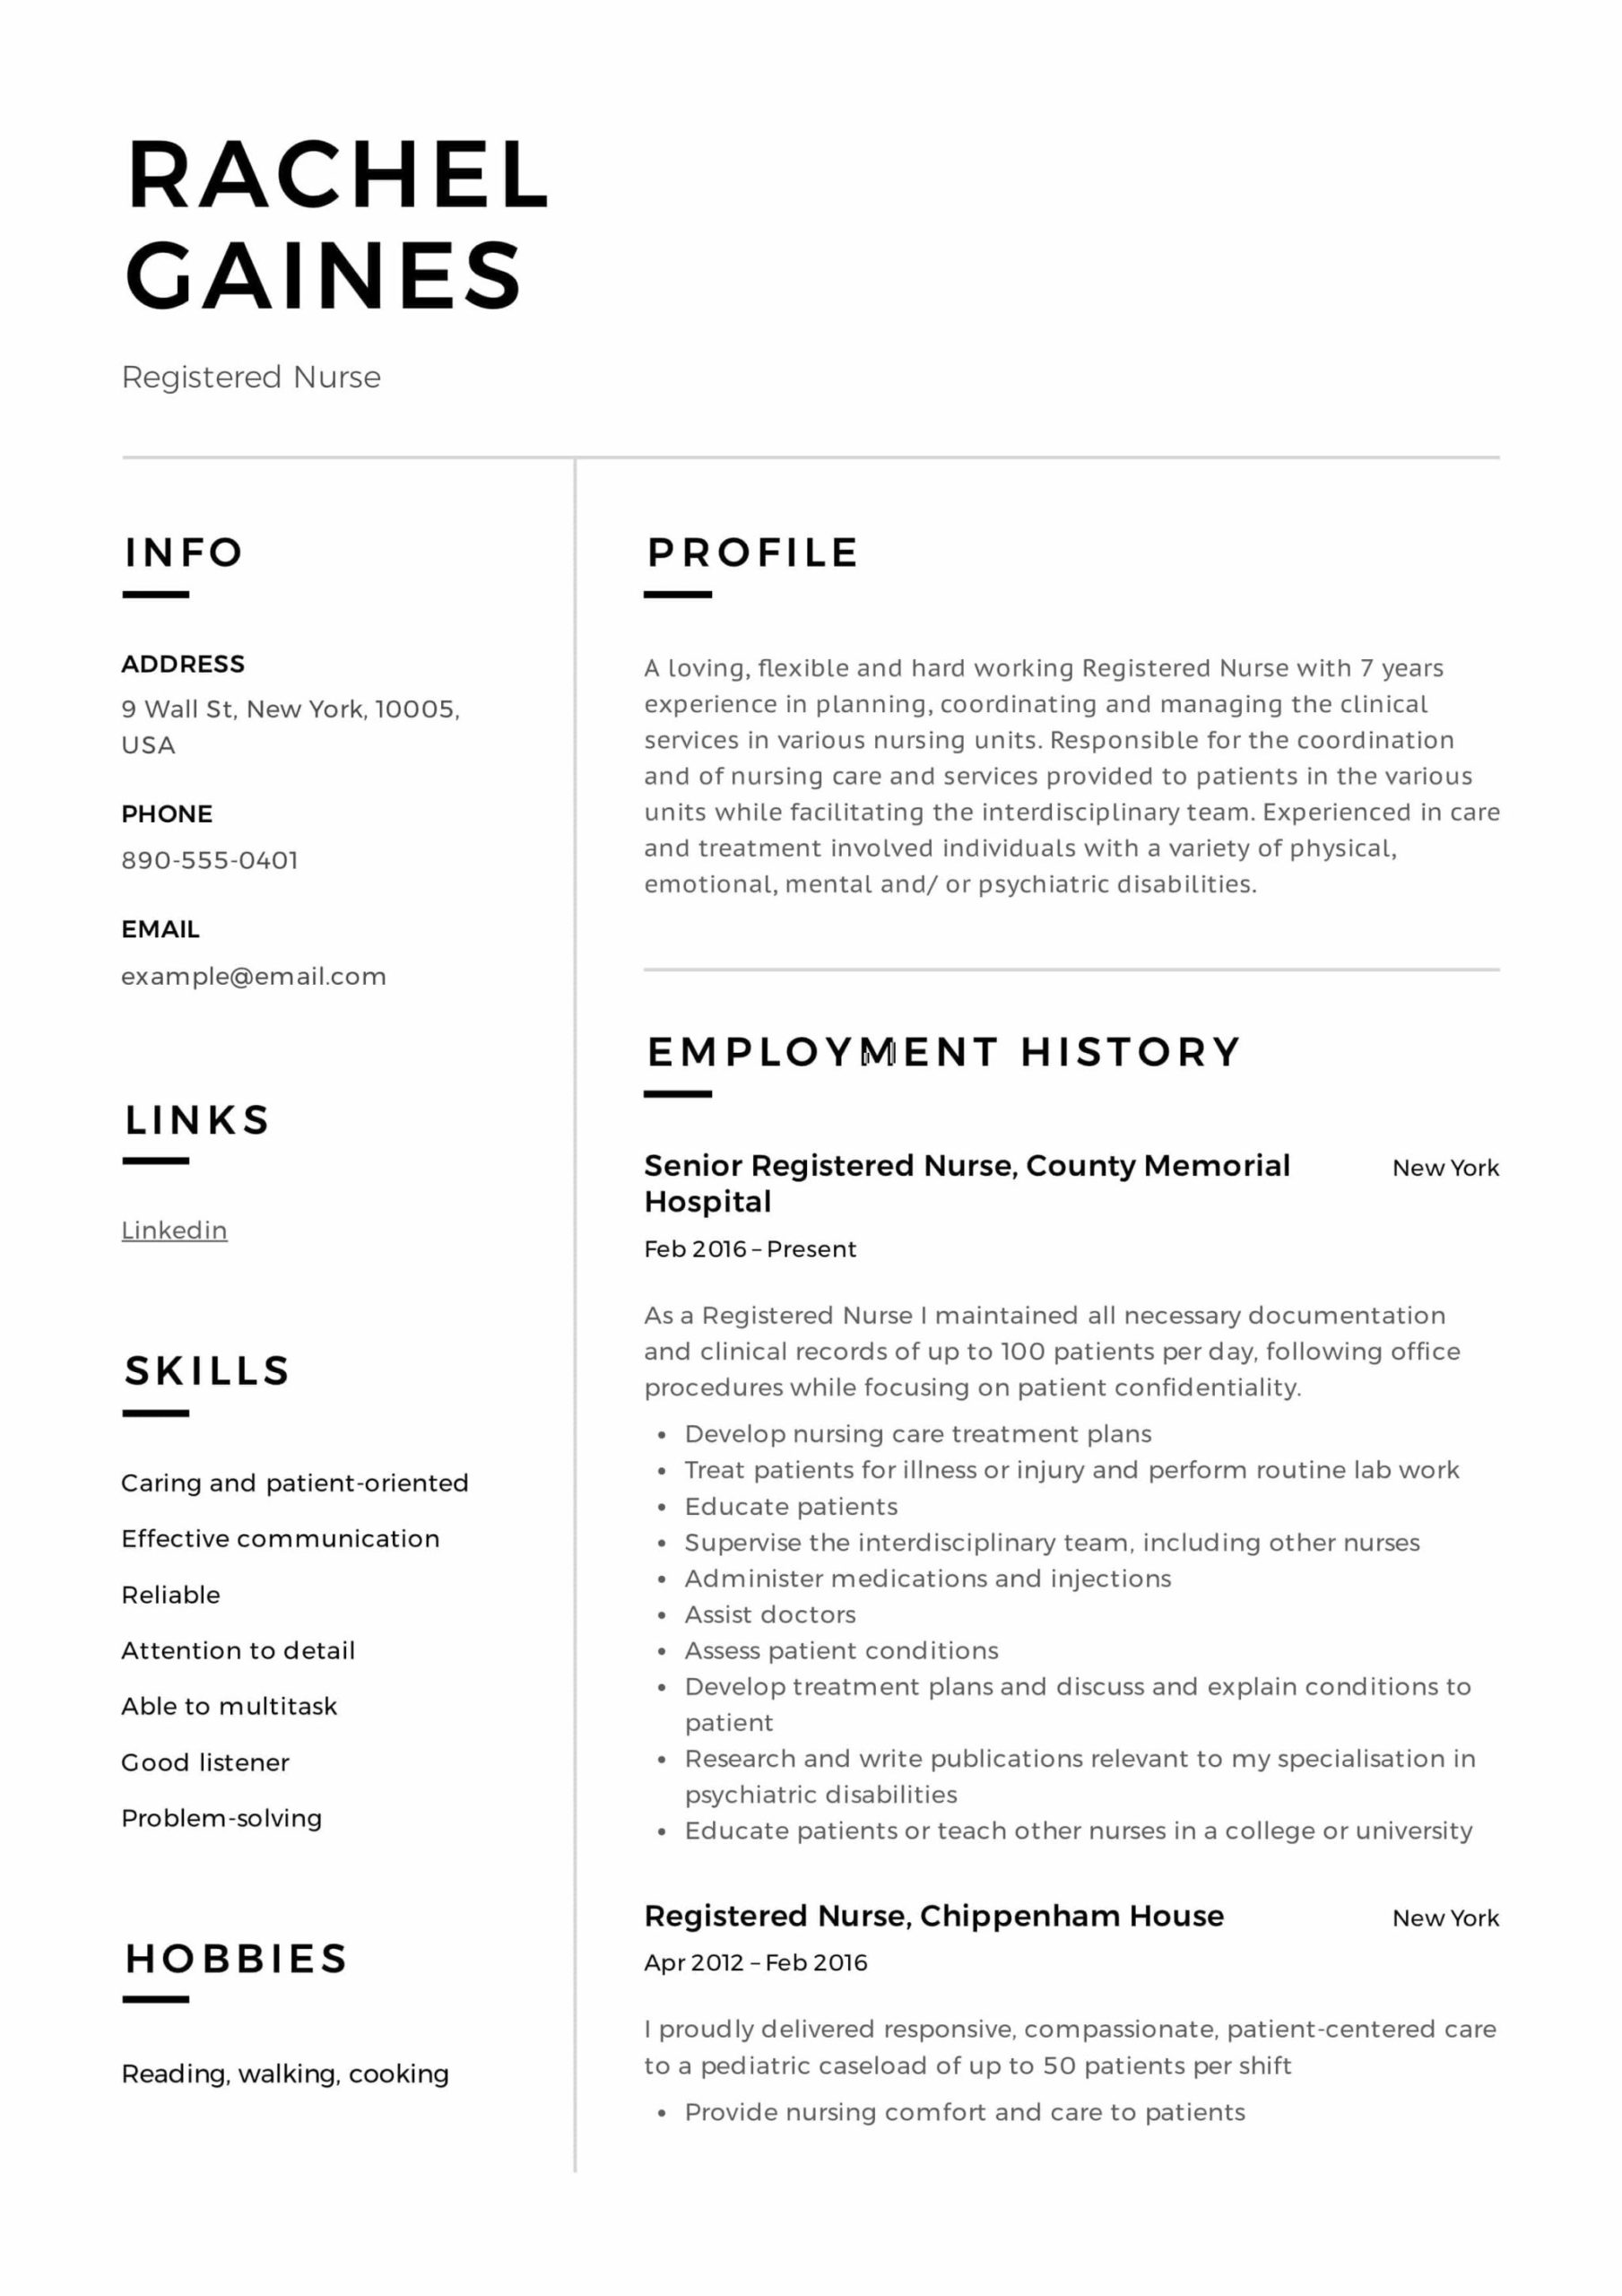 Sample Resume Registered Nurse for Masters Degree Registered Nurse Resume Examples & Writing Guide  12 Samples Pdf